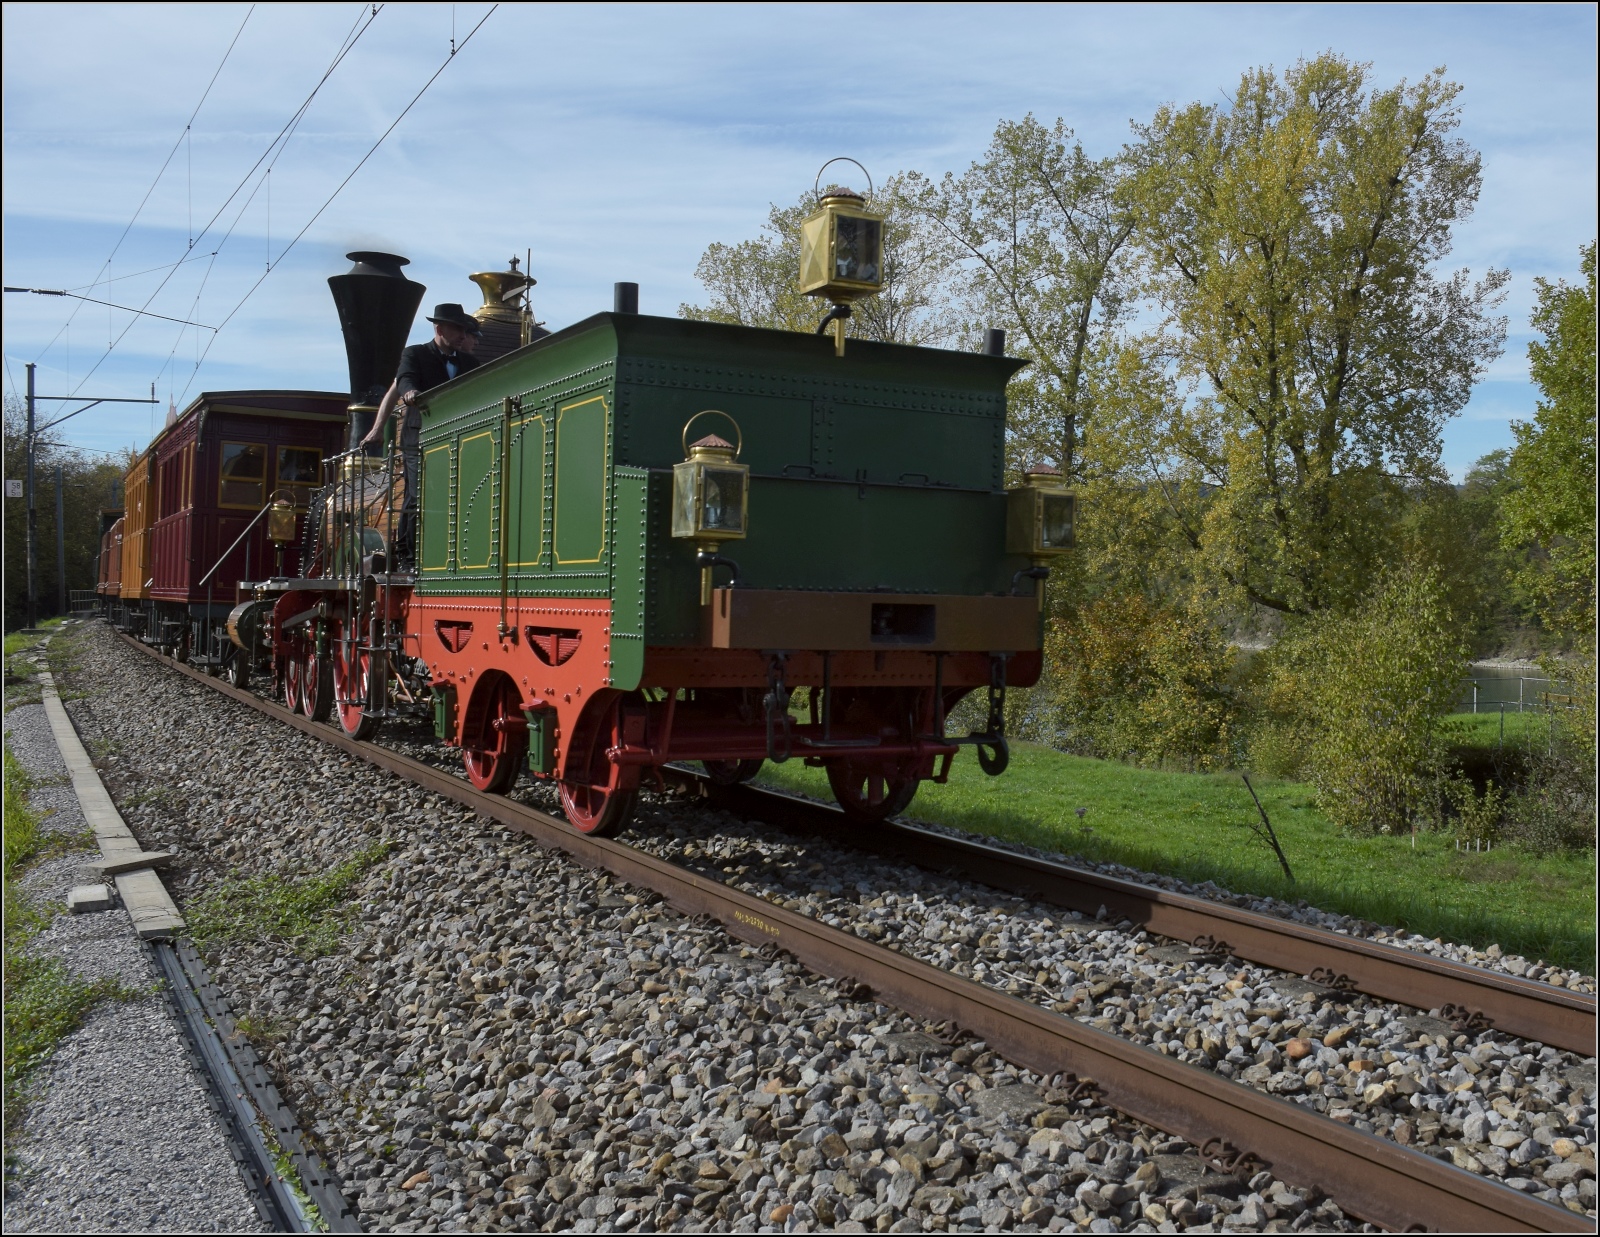 Spanisch-Brötli-Bahn zum 175. Geburtstag.

Mit durchschimmerndem Rhein, Etzgen, Oktober 2022.